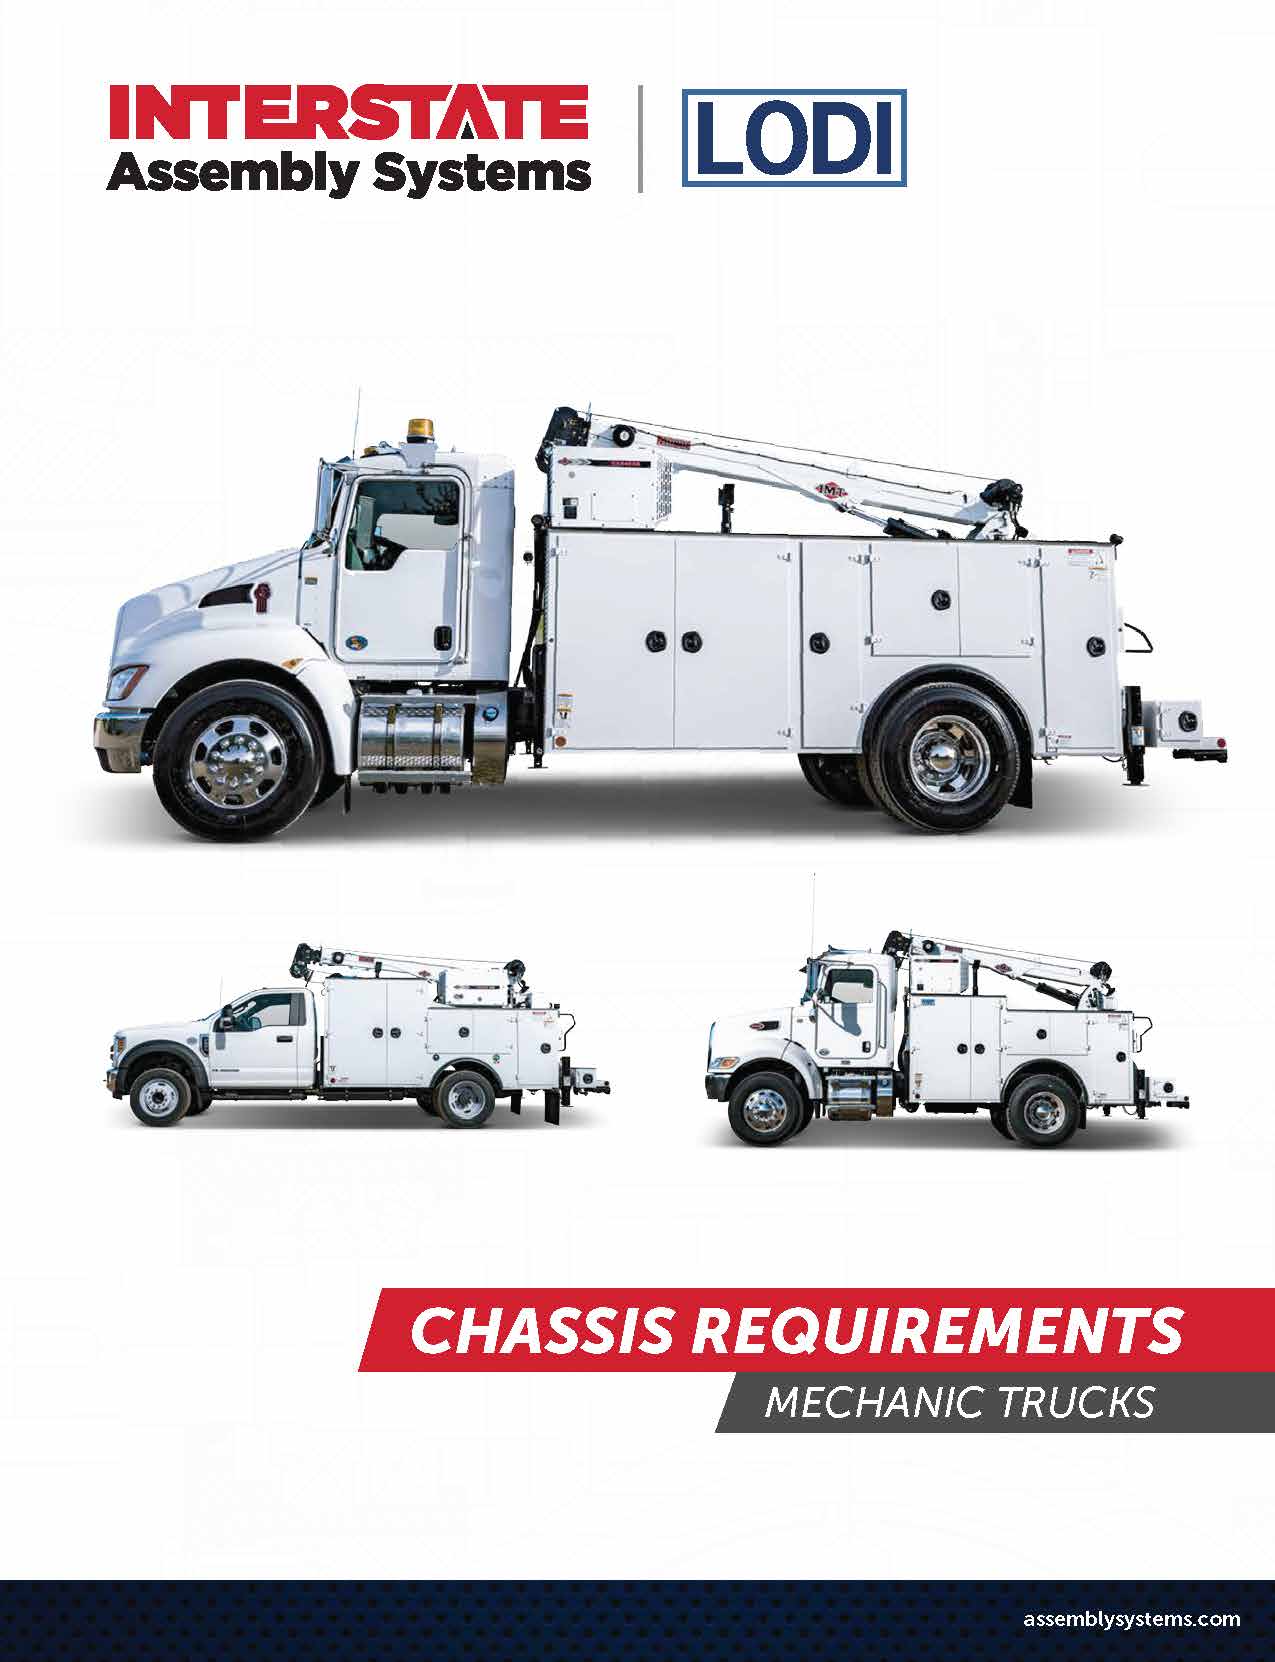 Mechanics Trucks - Chassis Requirements Brochure